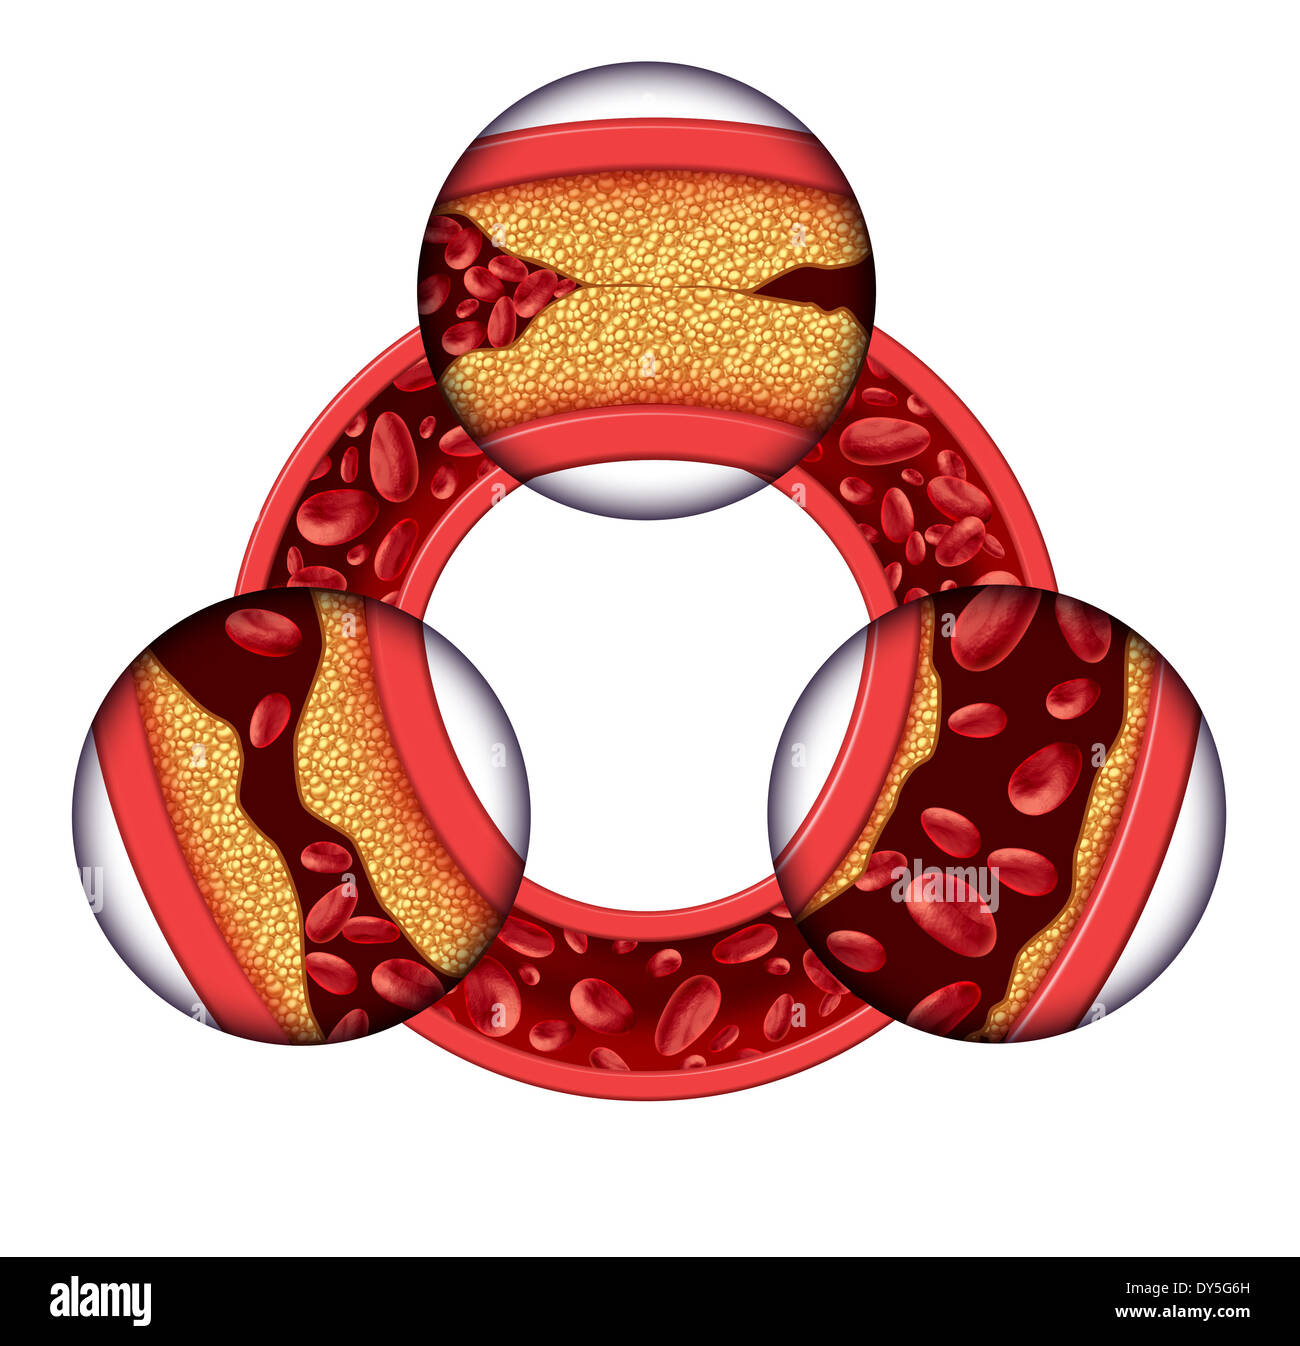 Koronare Erkrankungen medizinisches Konzept als eine kreisförmige Vene mit schrittweisen Plaquebildung, was zu verstopften Arterien und Atherosklerose mit mit drei dimensionale menschliche Anatomie das Diagramm zeigt die Risiken der Cholesterin-Ablagerungen. Stockfoto